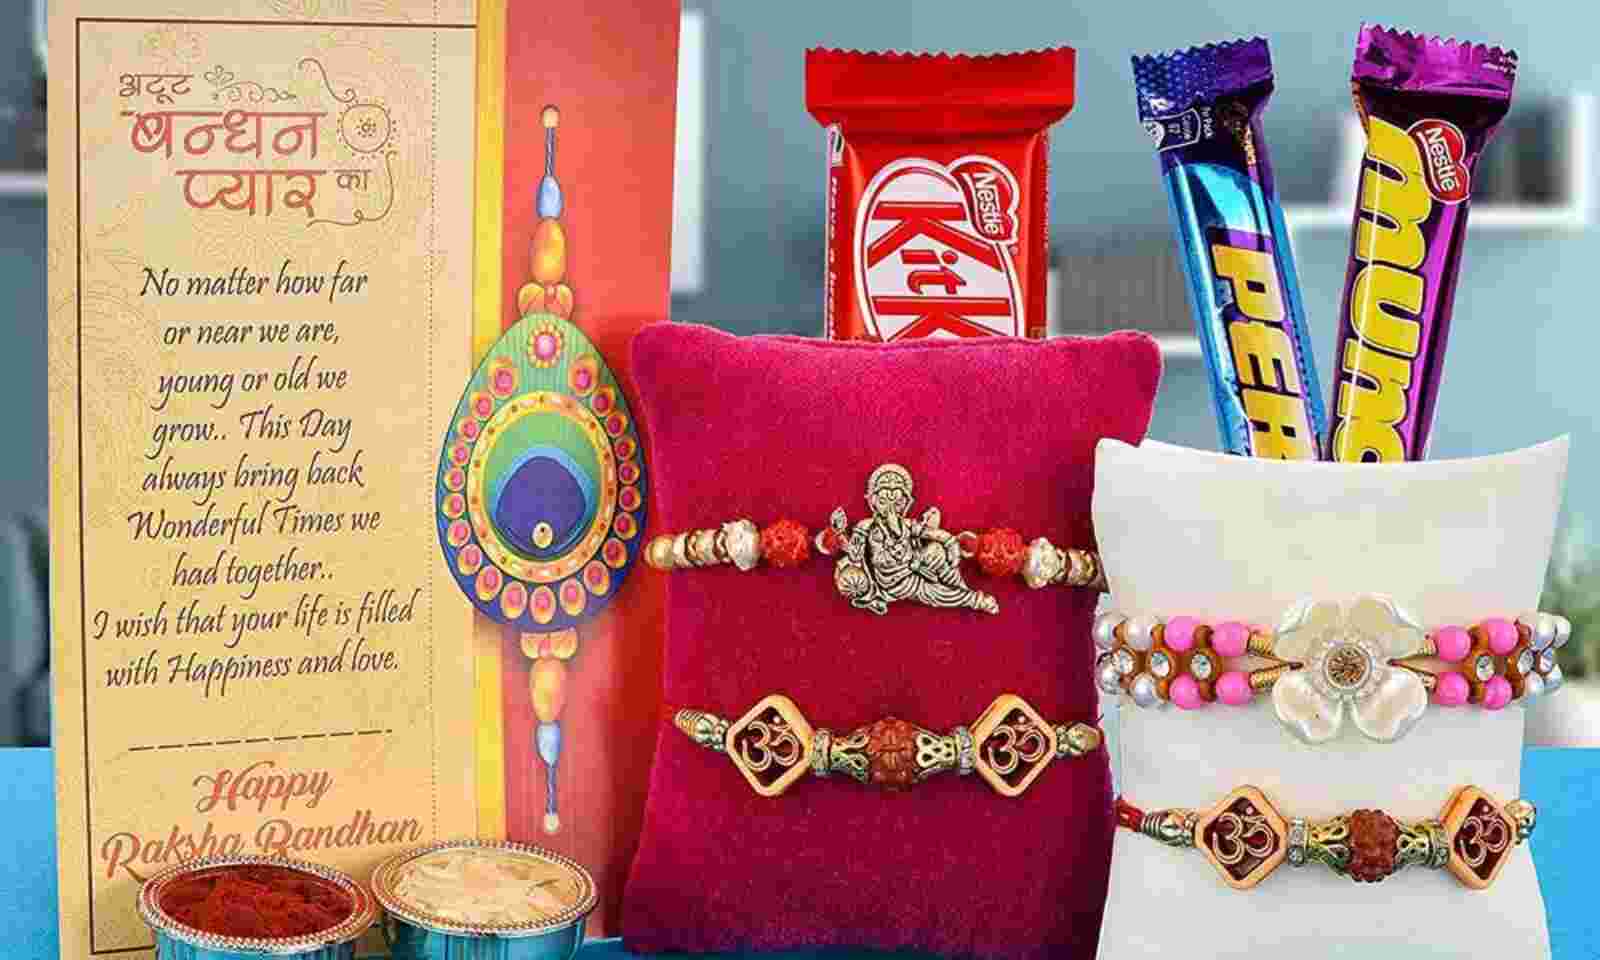 Amazon.com: Raksha Bandhan Gifts For Sisters